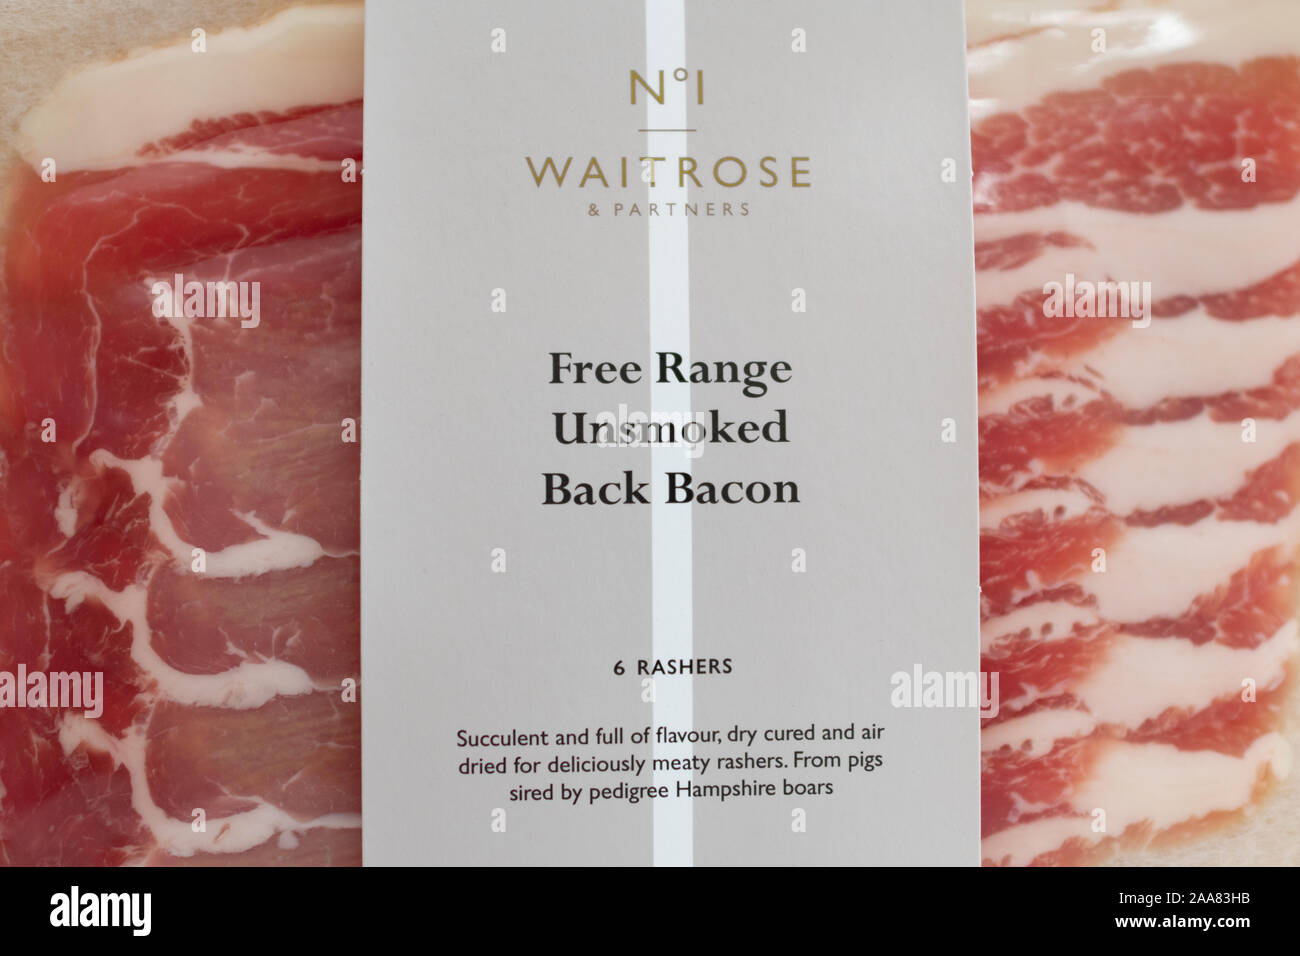 Free range bacon - pack of Waitrose unsmoked back bacon - UK Stock Photo